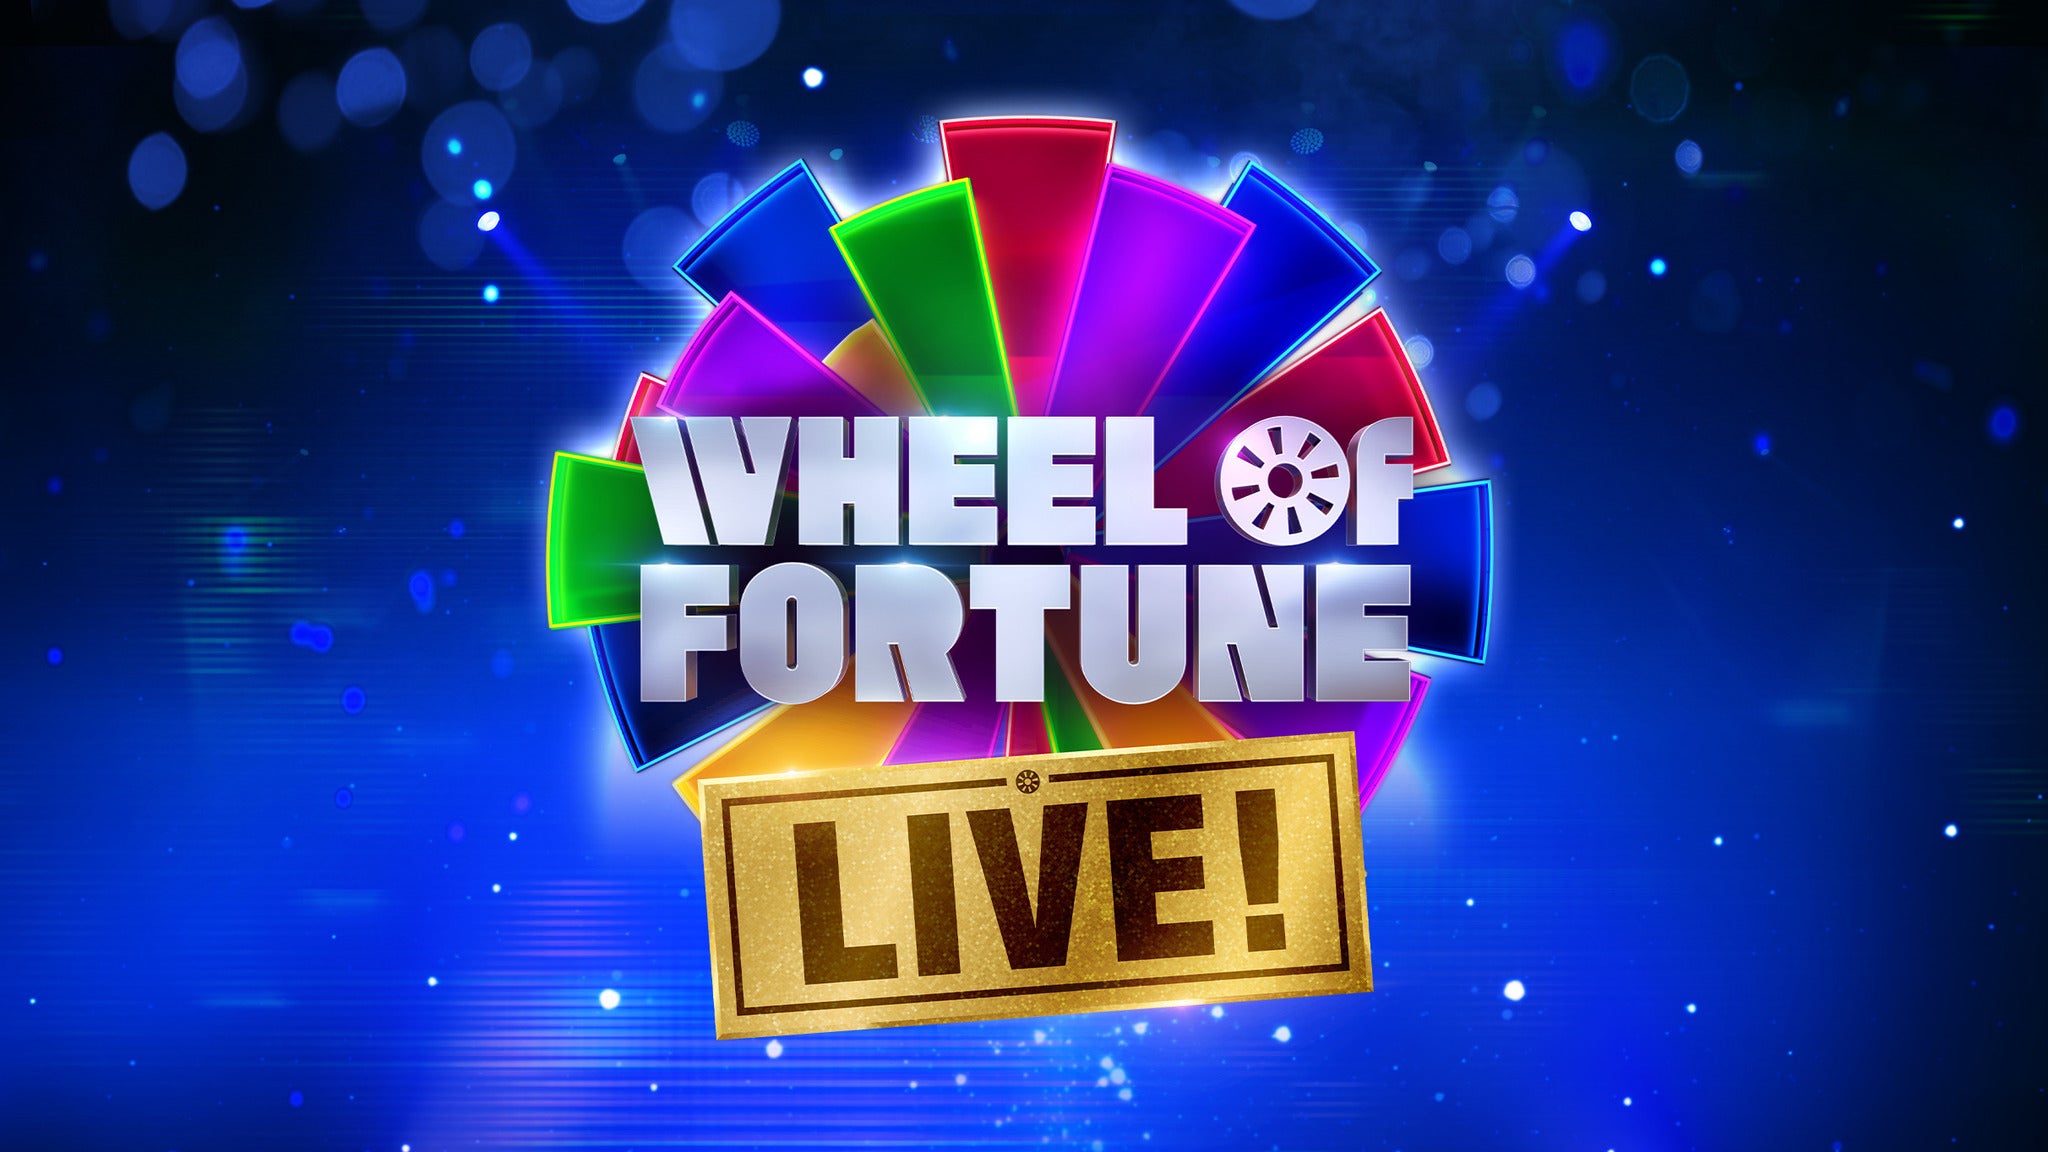 Wheel Of Fortune Live! presale code